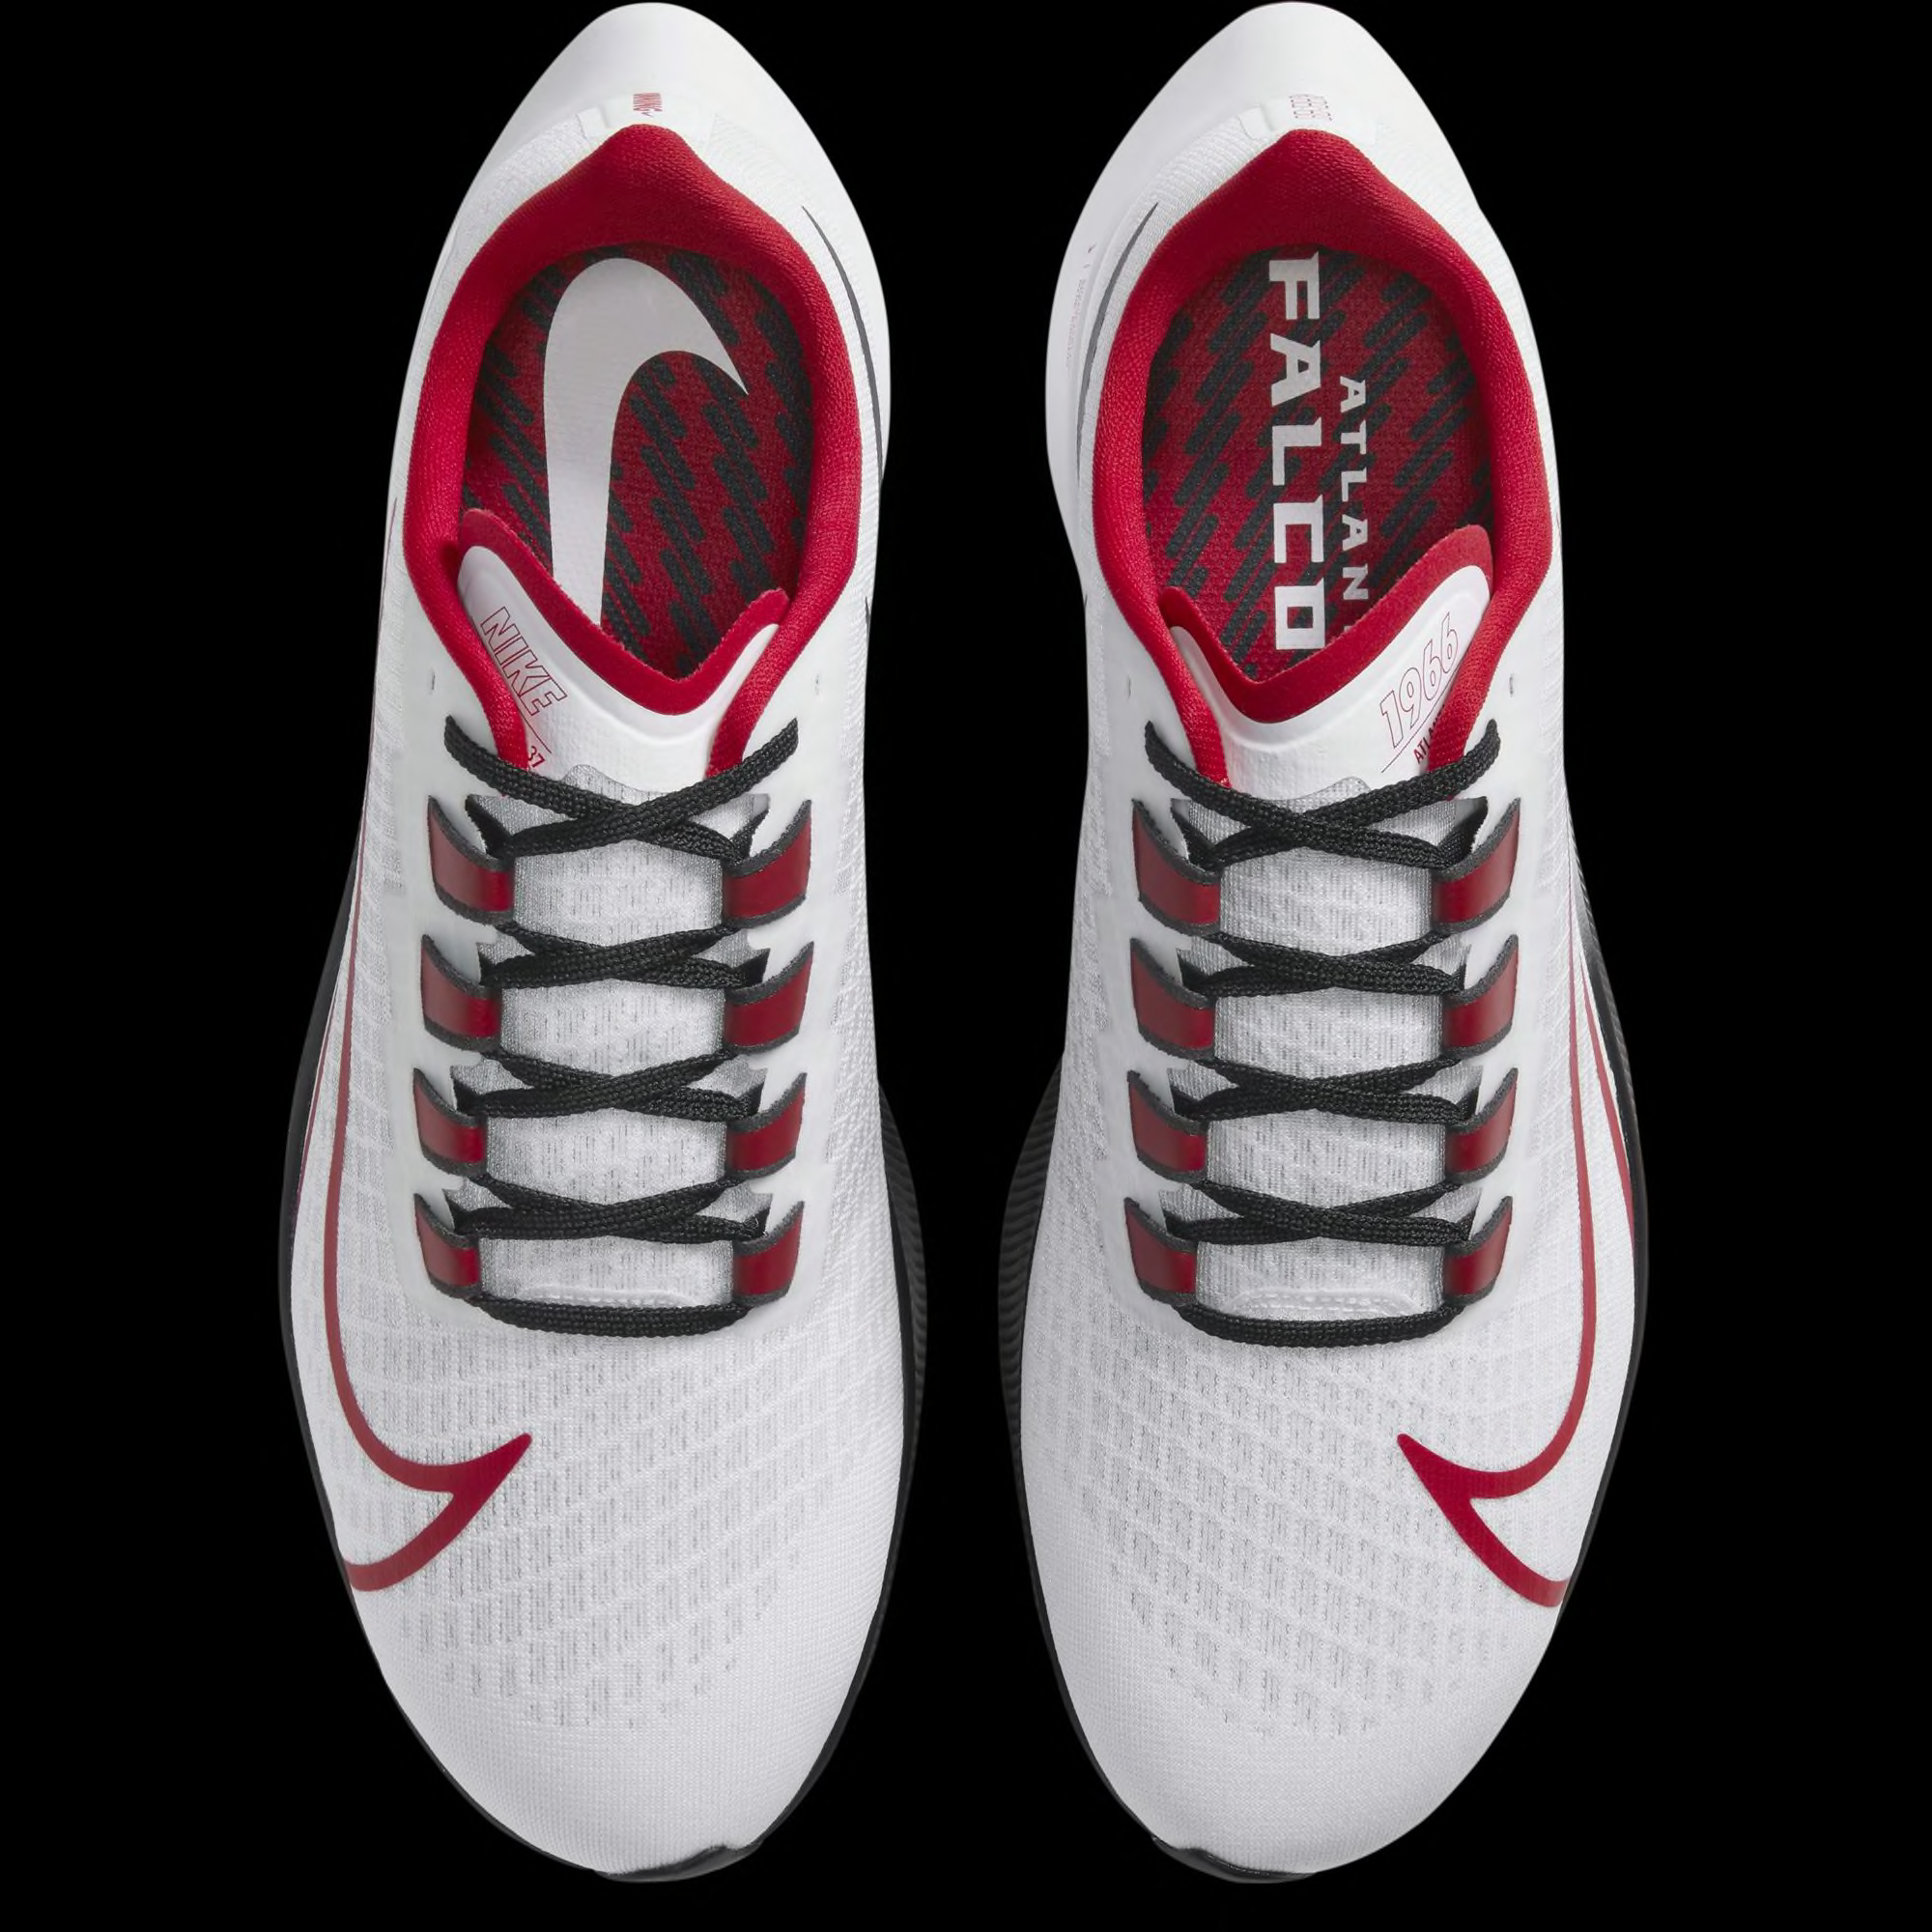 Atlanta Falcons Nike running shoes today